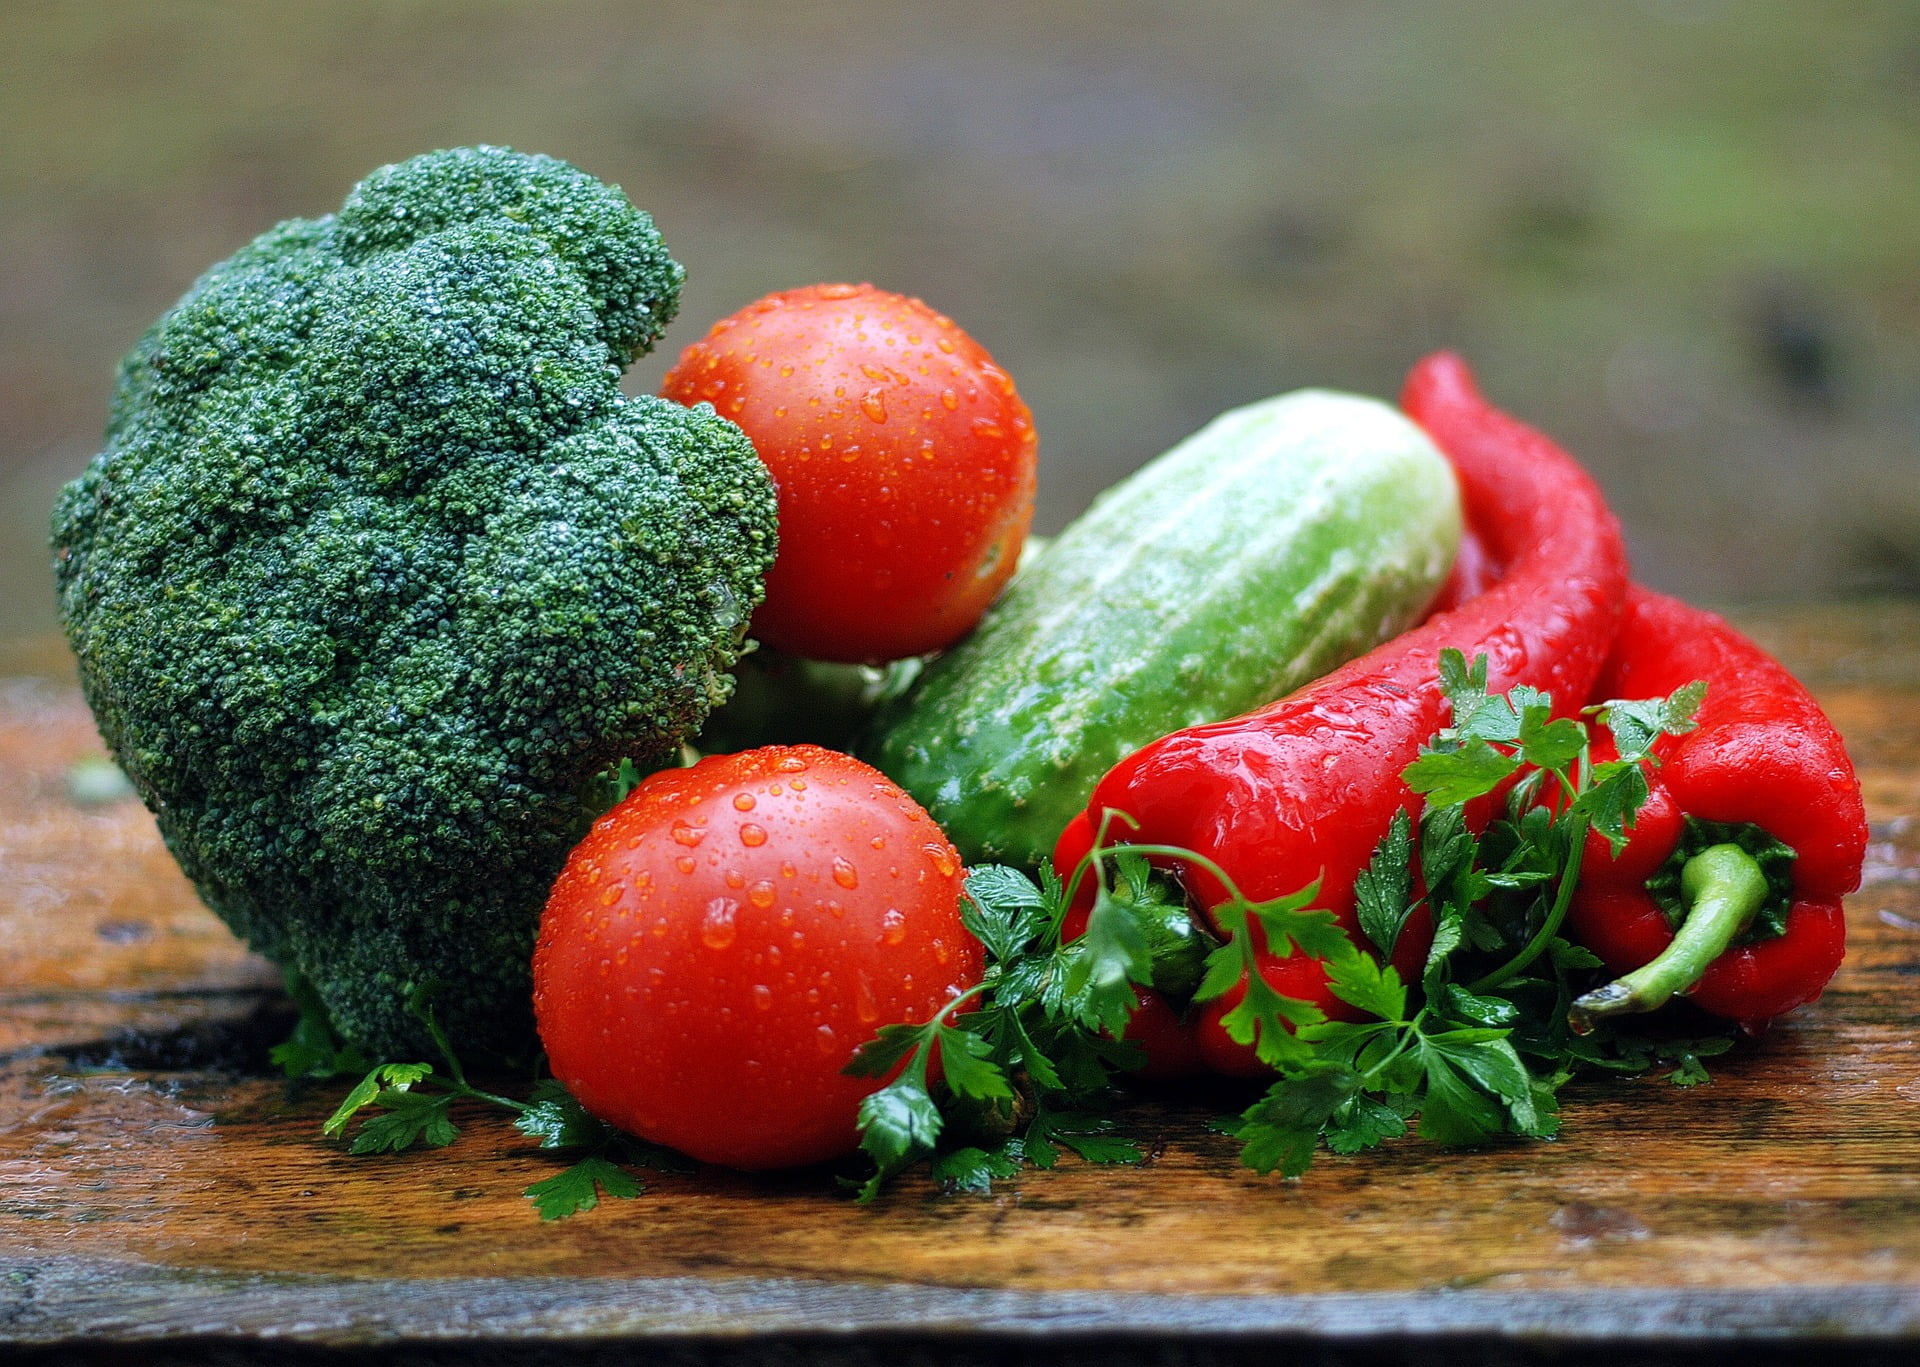 Met deze tips voeg je meer groenten en fruit toe aan je voedingspatroon